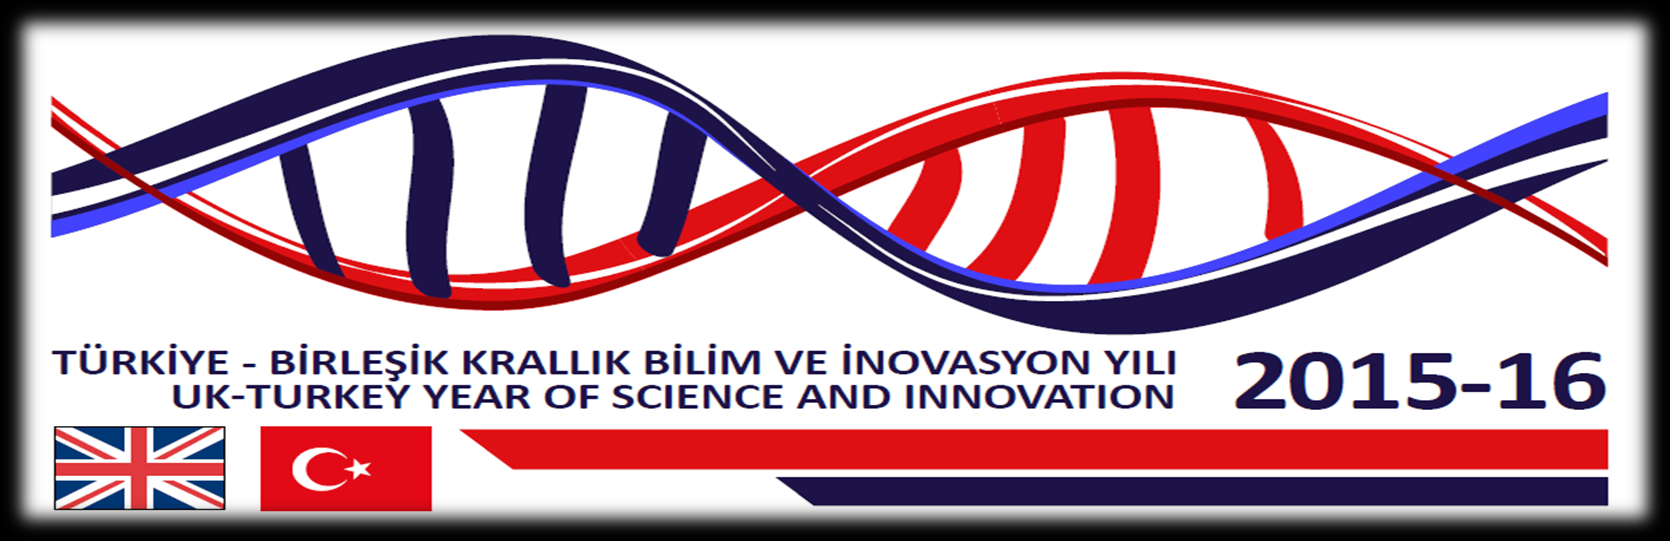 2015 Türk-İngiliz Bilim Yılı Açılış Etkinliği 24 Mart 2015, Ankara Üst Düzey Katılım Kapsam Sanayi kuruluşları arasında işbirliği Ufuk 2020 Programı